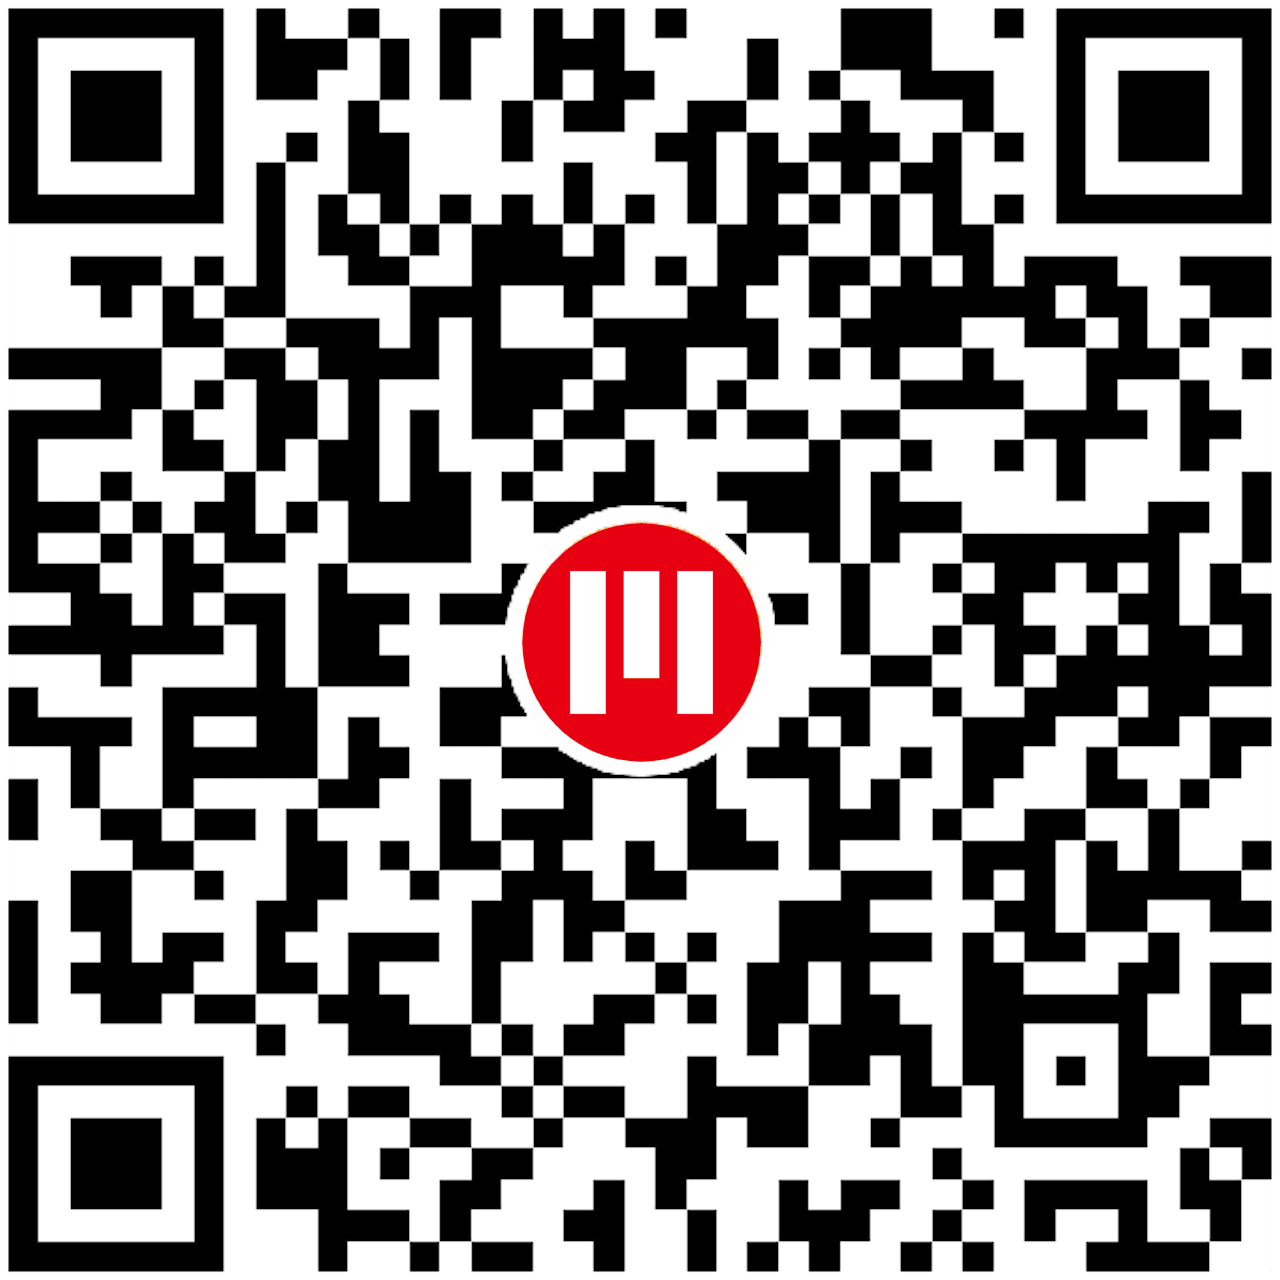 bitcoin wallet address QRCode @ Mountos : Bitcoin Laboratory